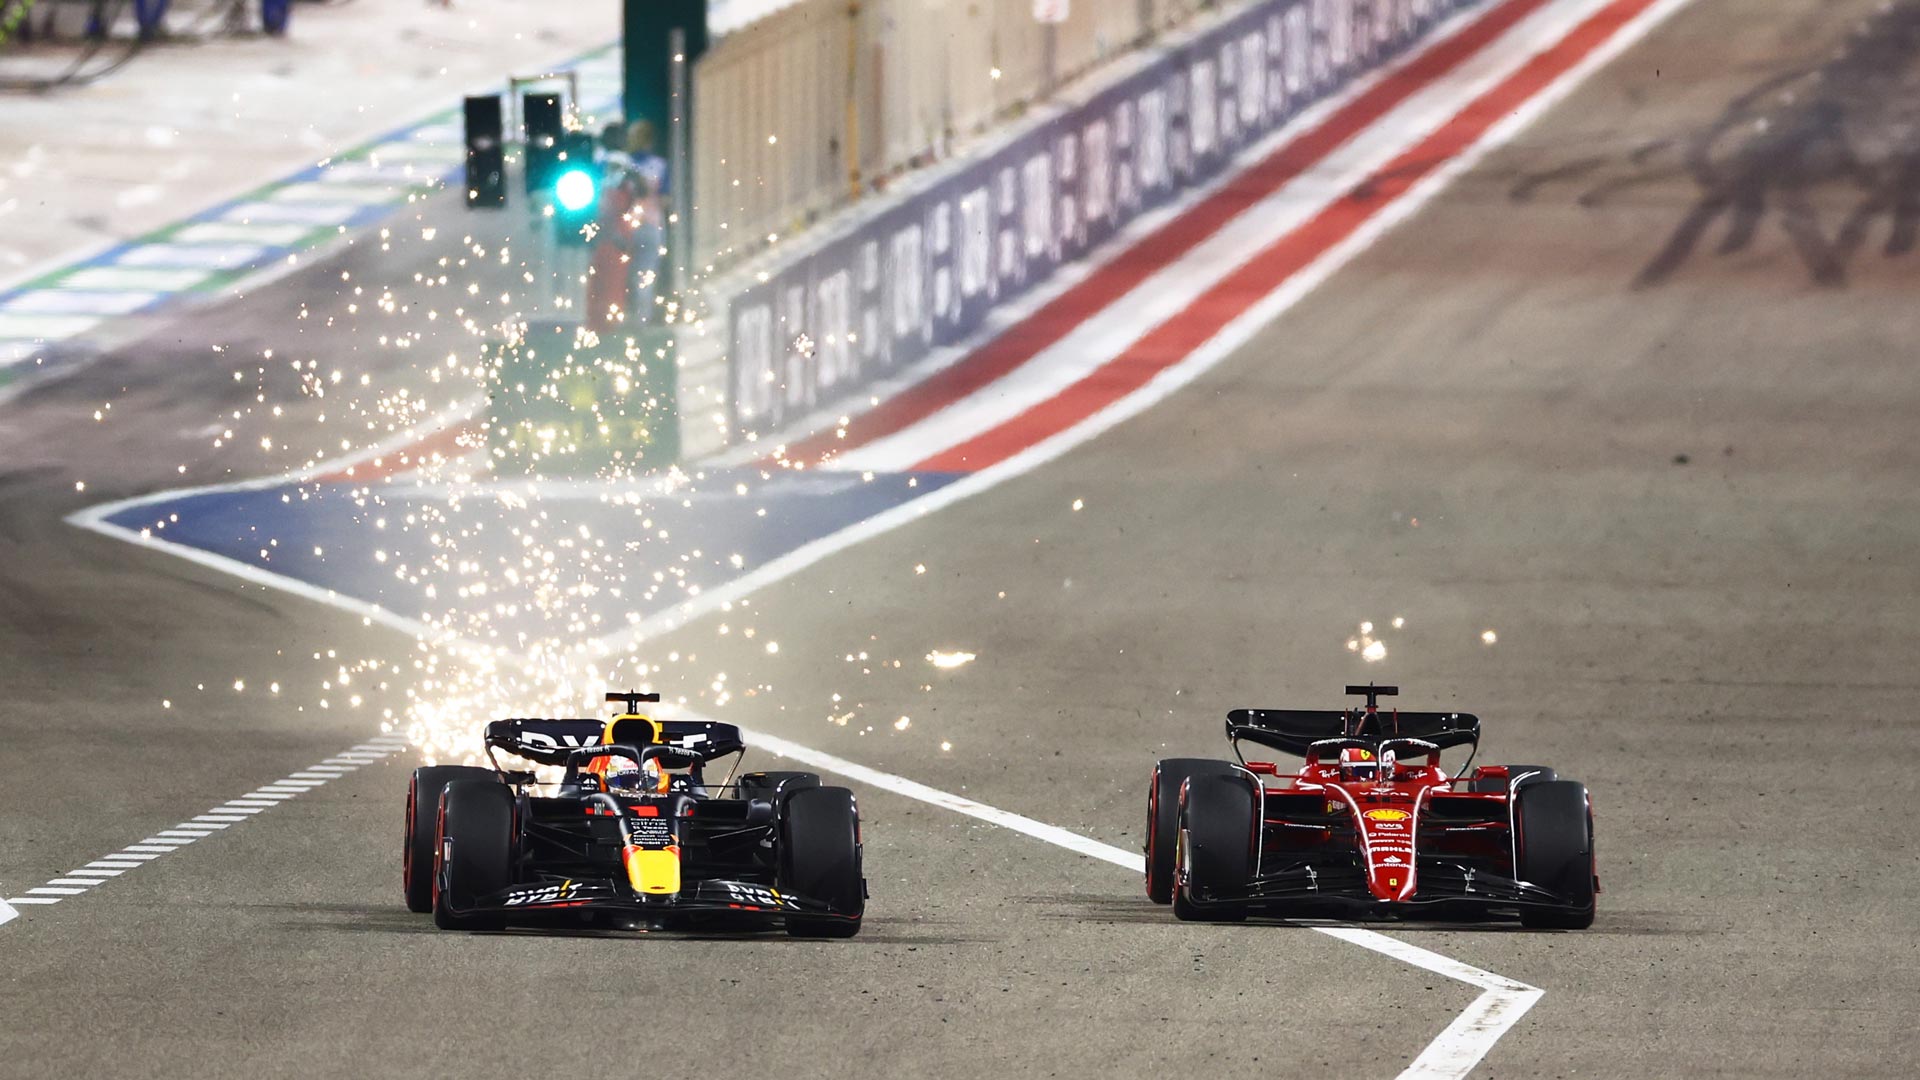 Red Bull are still favourites say Ferrari despite winning start in Bahrain